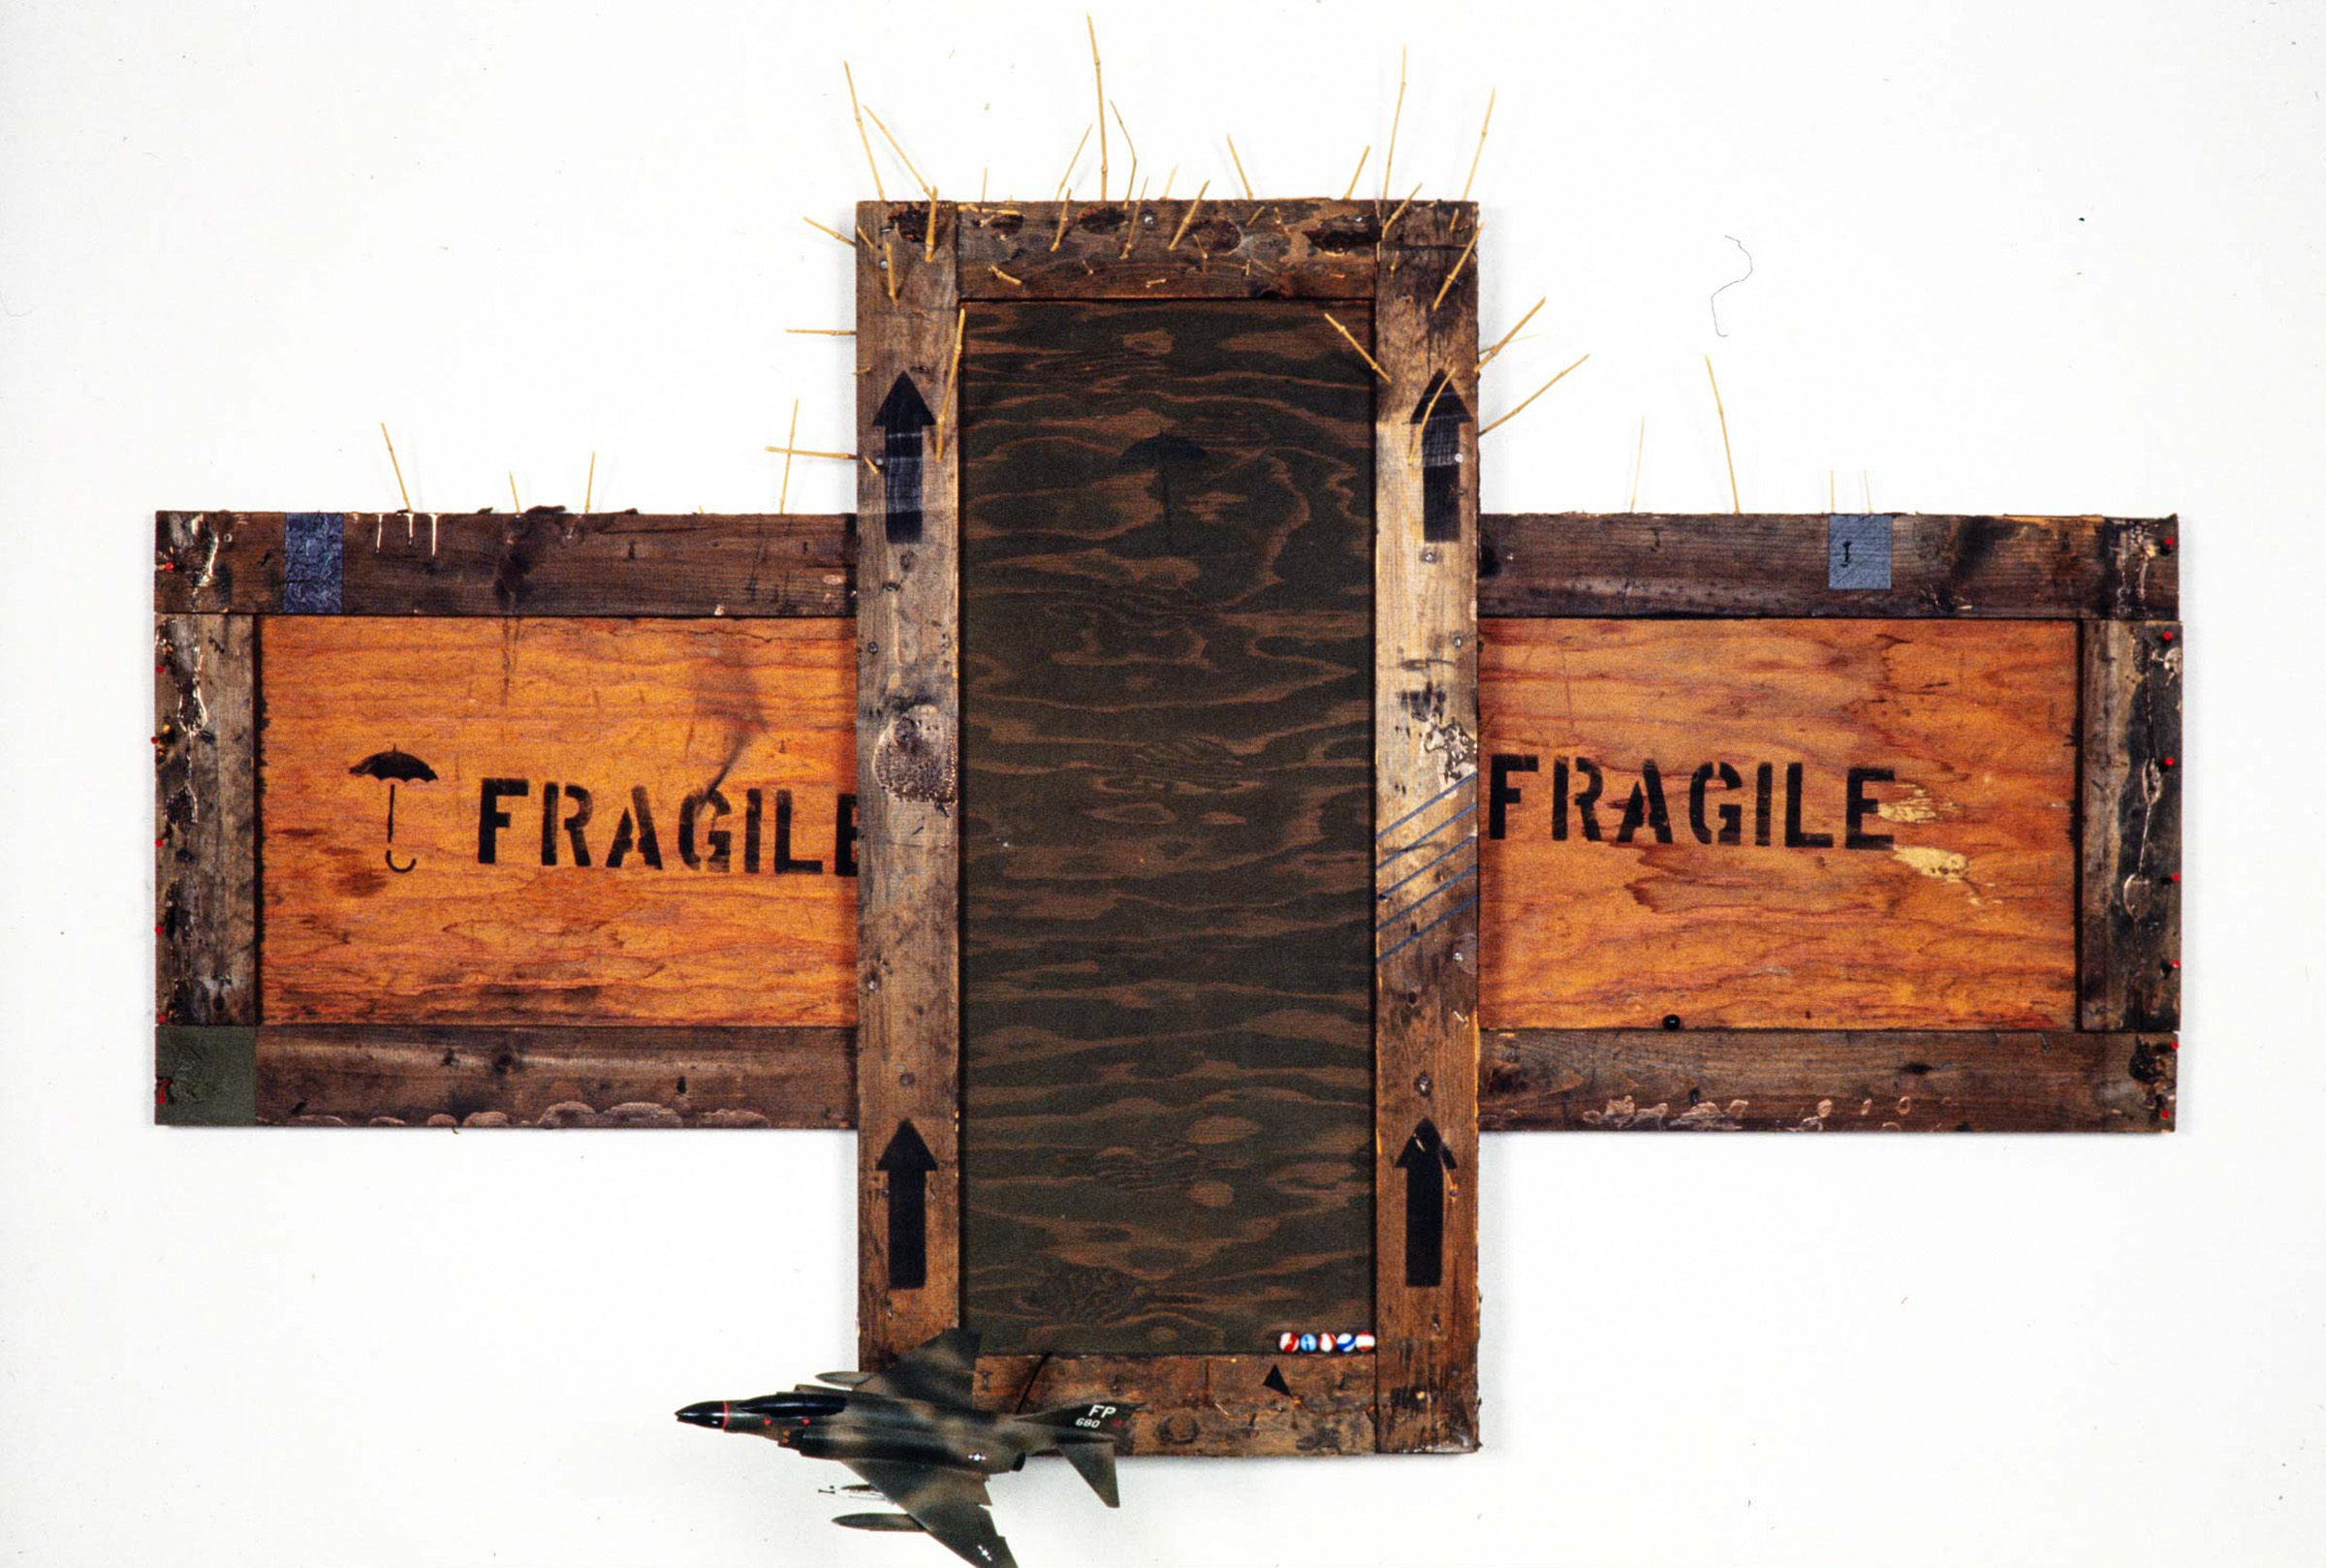 Fragile-William-Short-1985